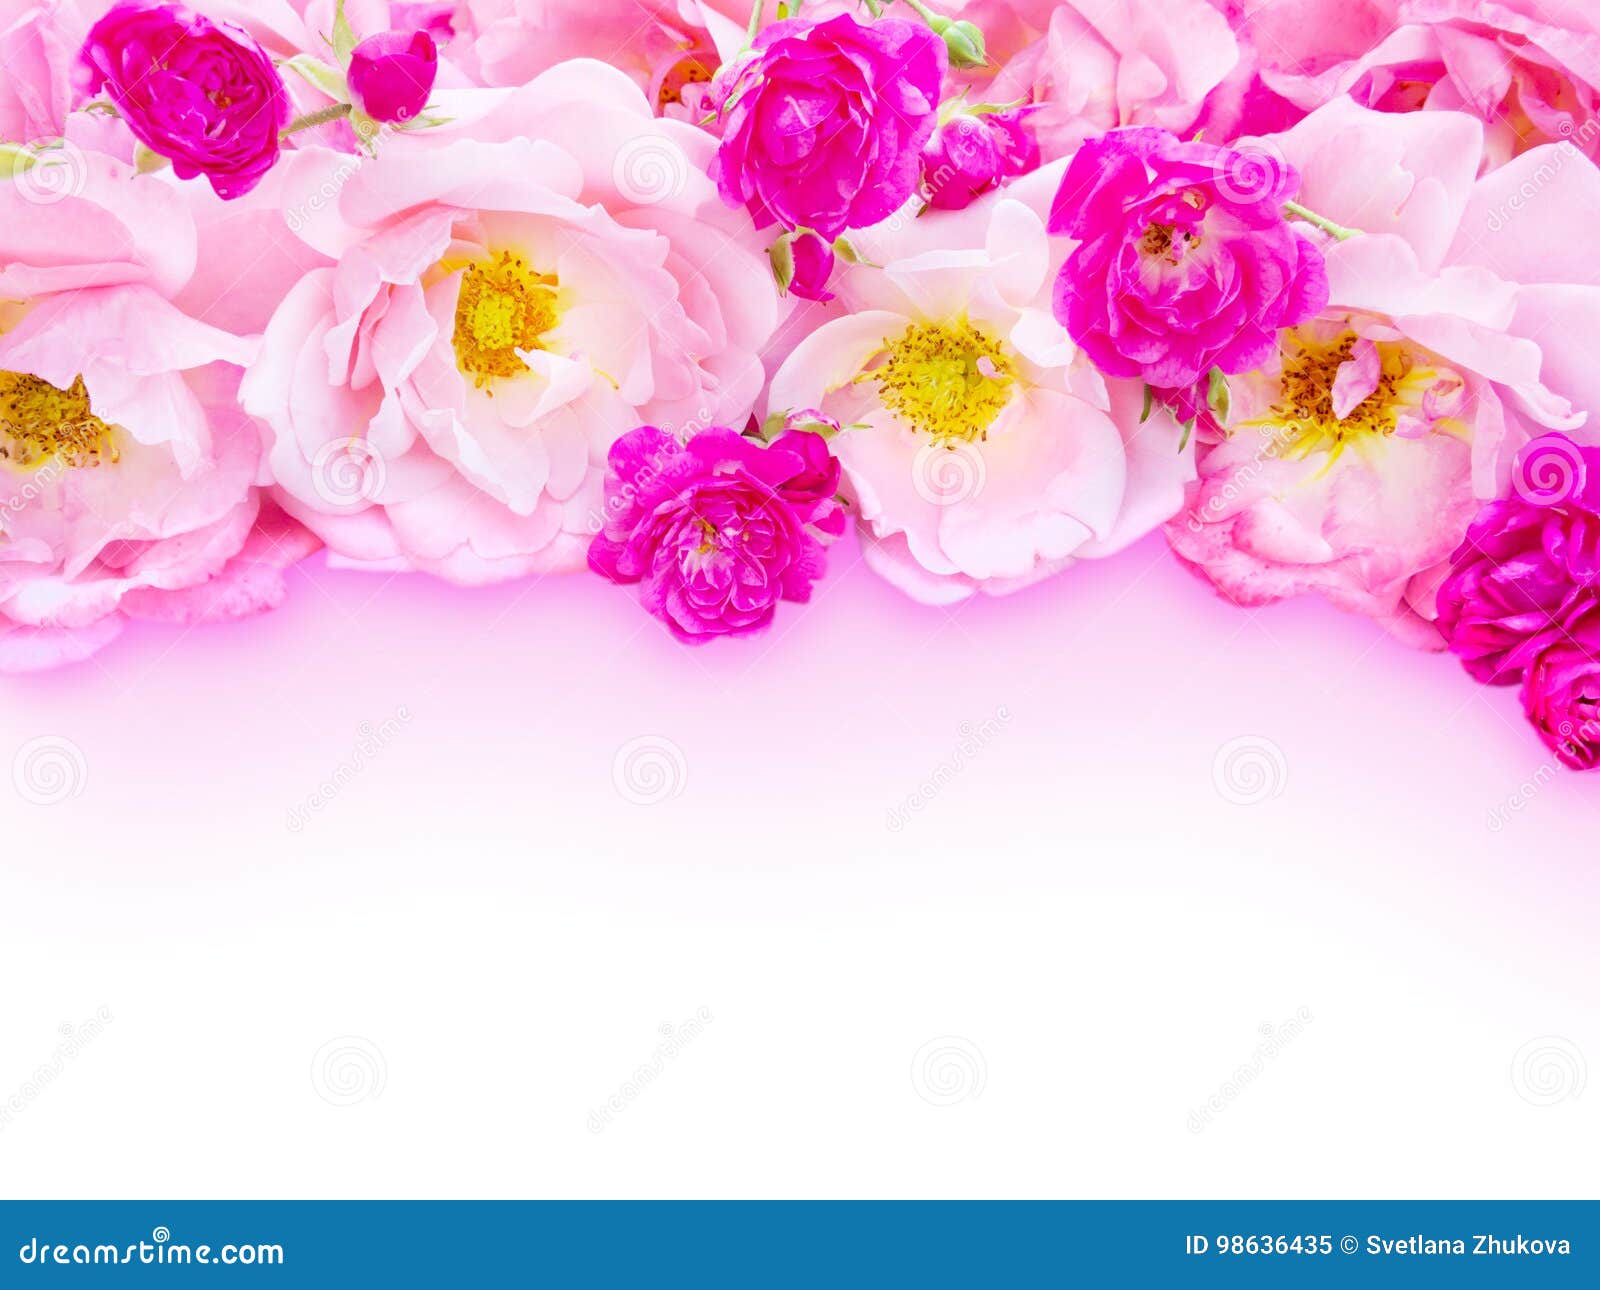 Rosa gelockte Rosen und kleine vibrierende rosa Rosen auf dem alten verwitterten hölzernen Brett